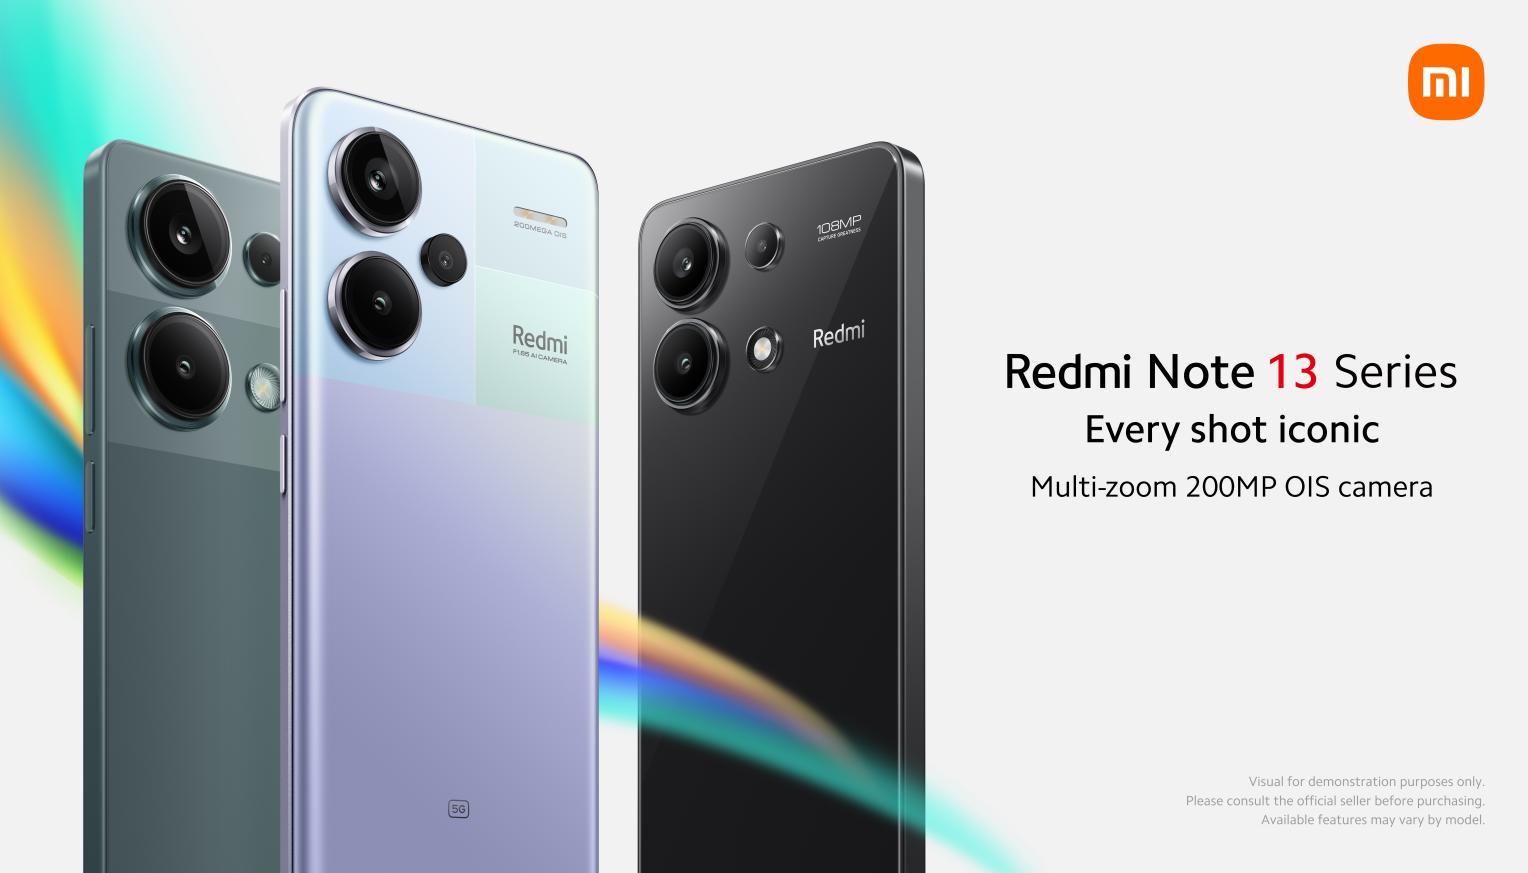 Redmi Note 13 5G - 108MP AI Triple Camera 